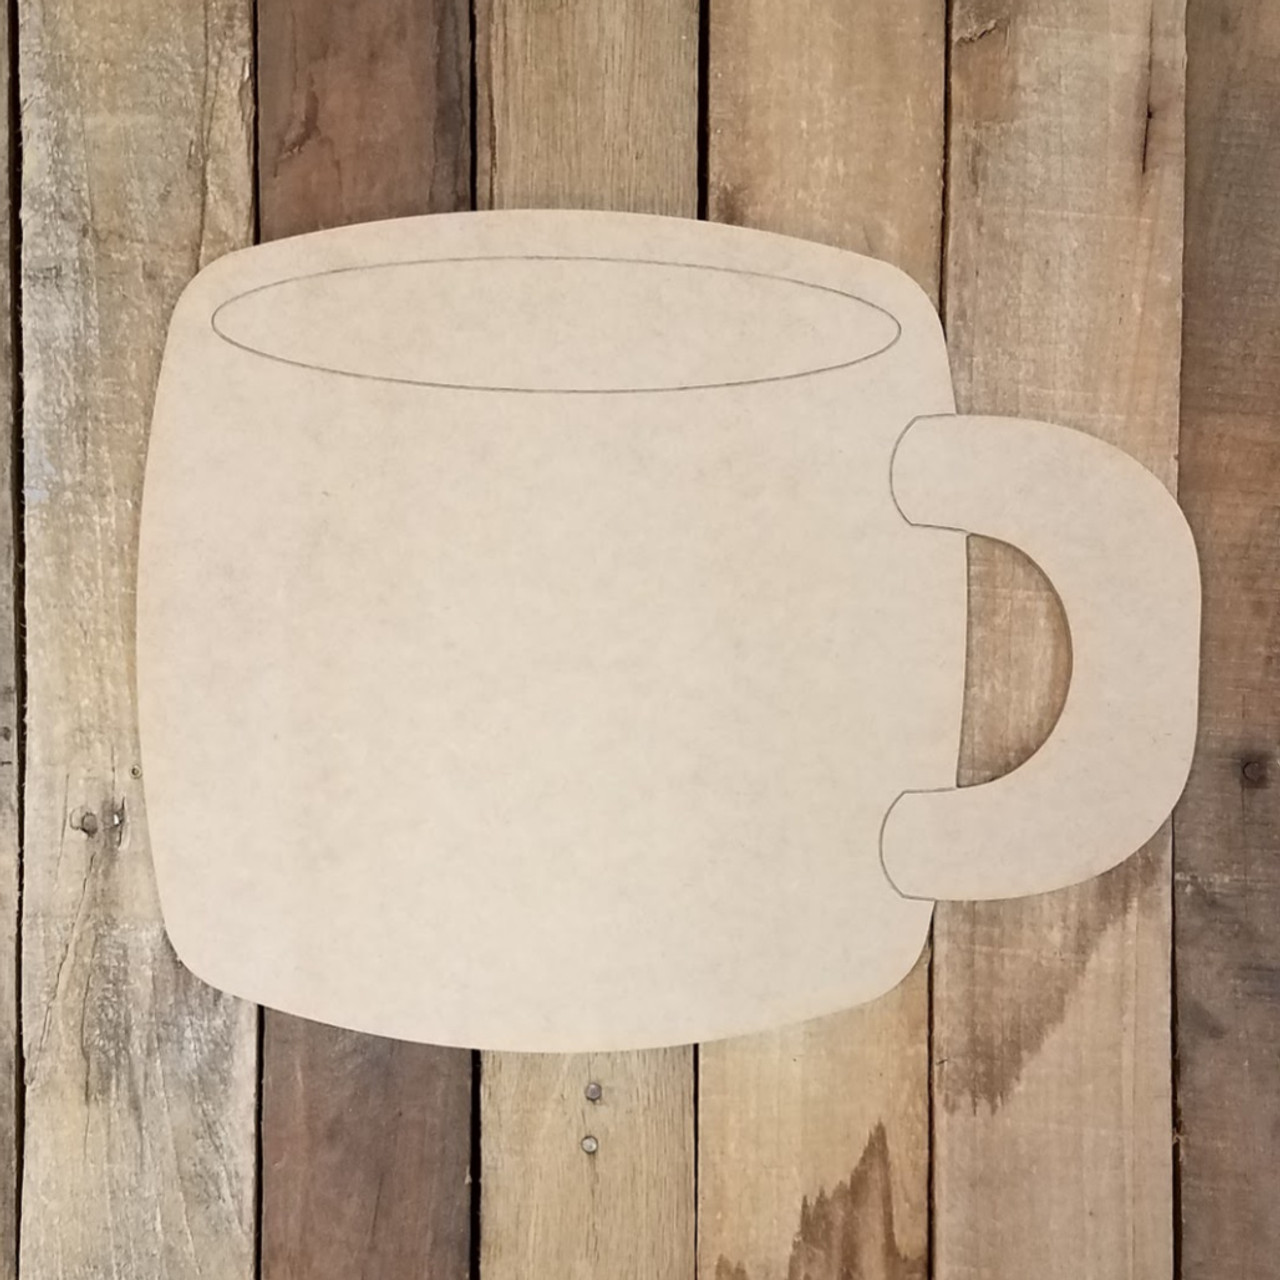 Artisan Coffee Mugs Acrylic Painting LIVE Tutorial 